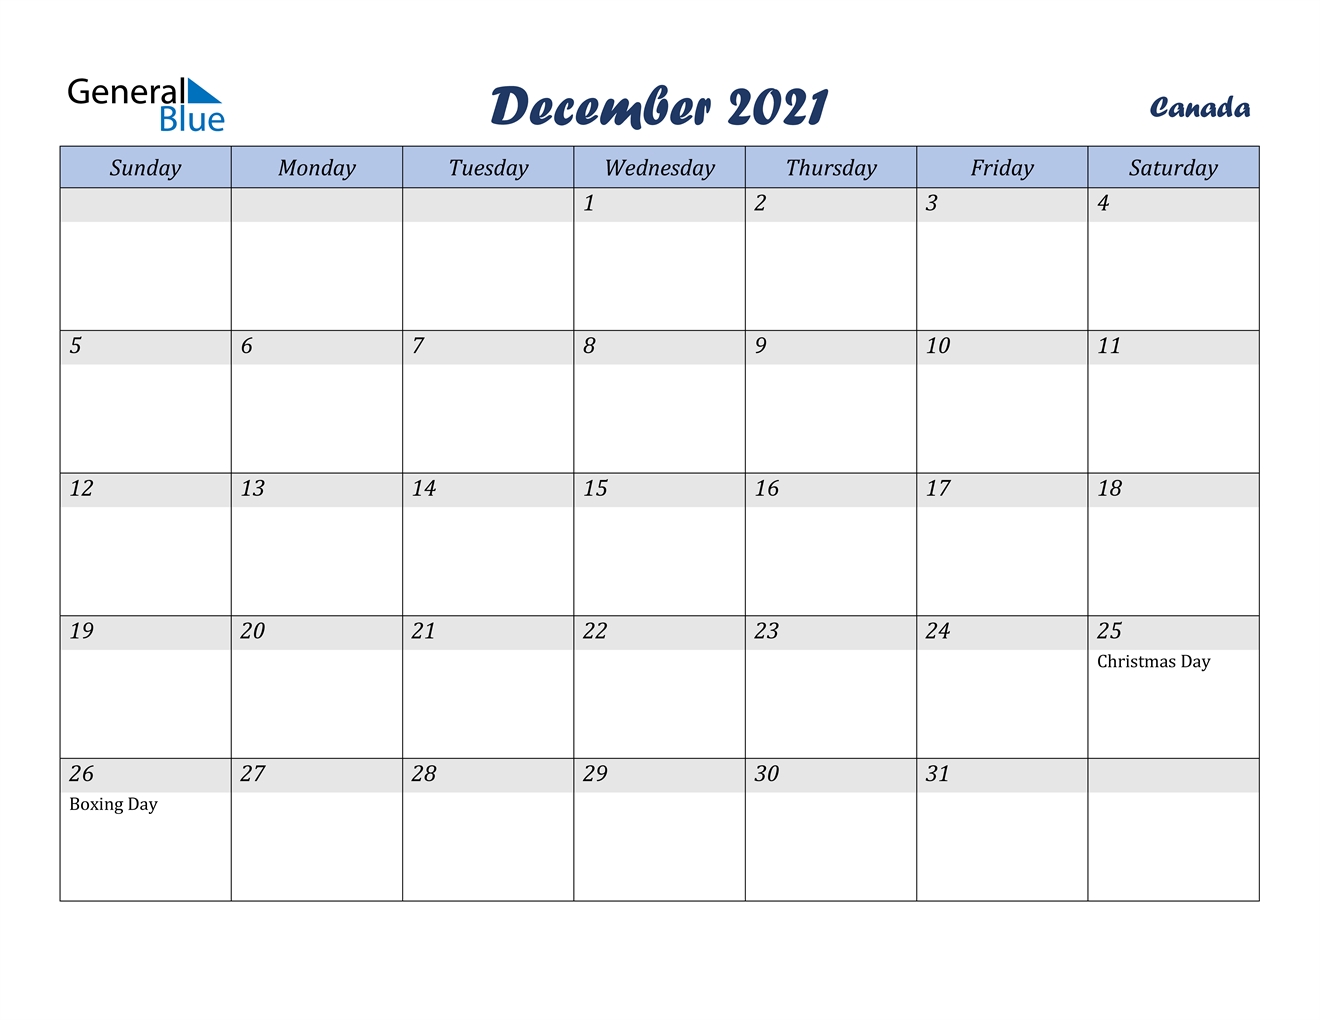 December 2021 Calendar - Canada Www.a-Printable-Calendar.com December 2021